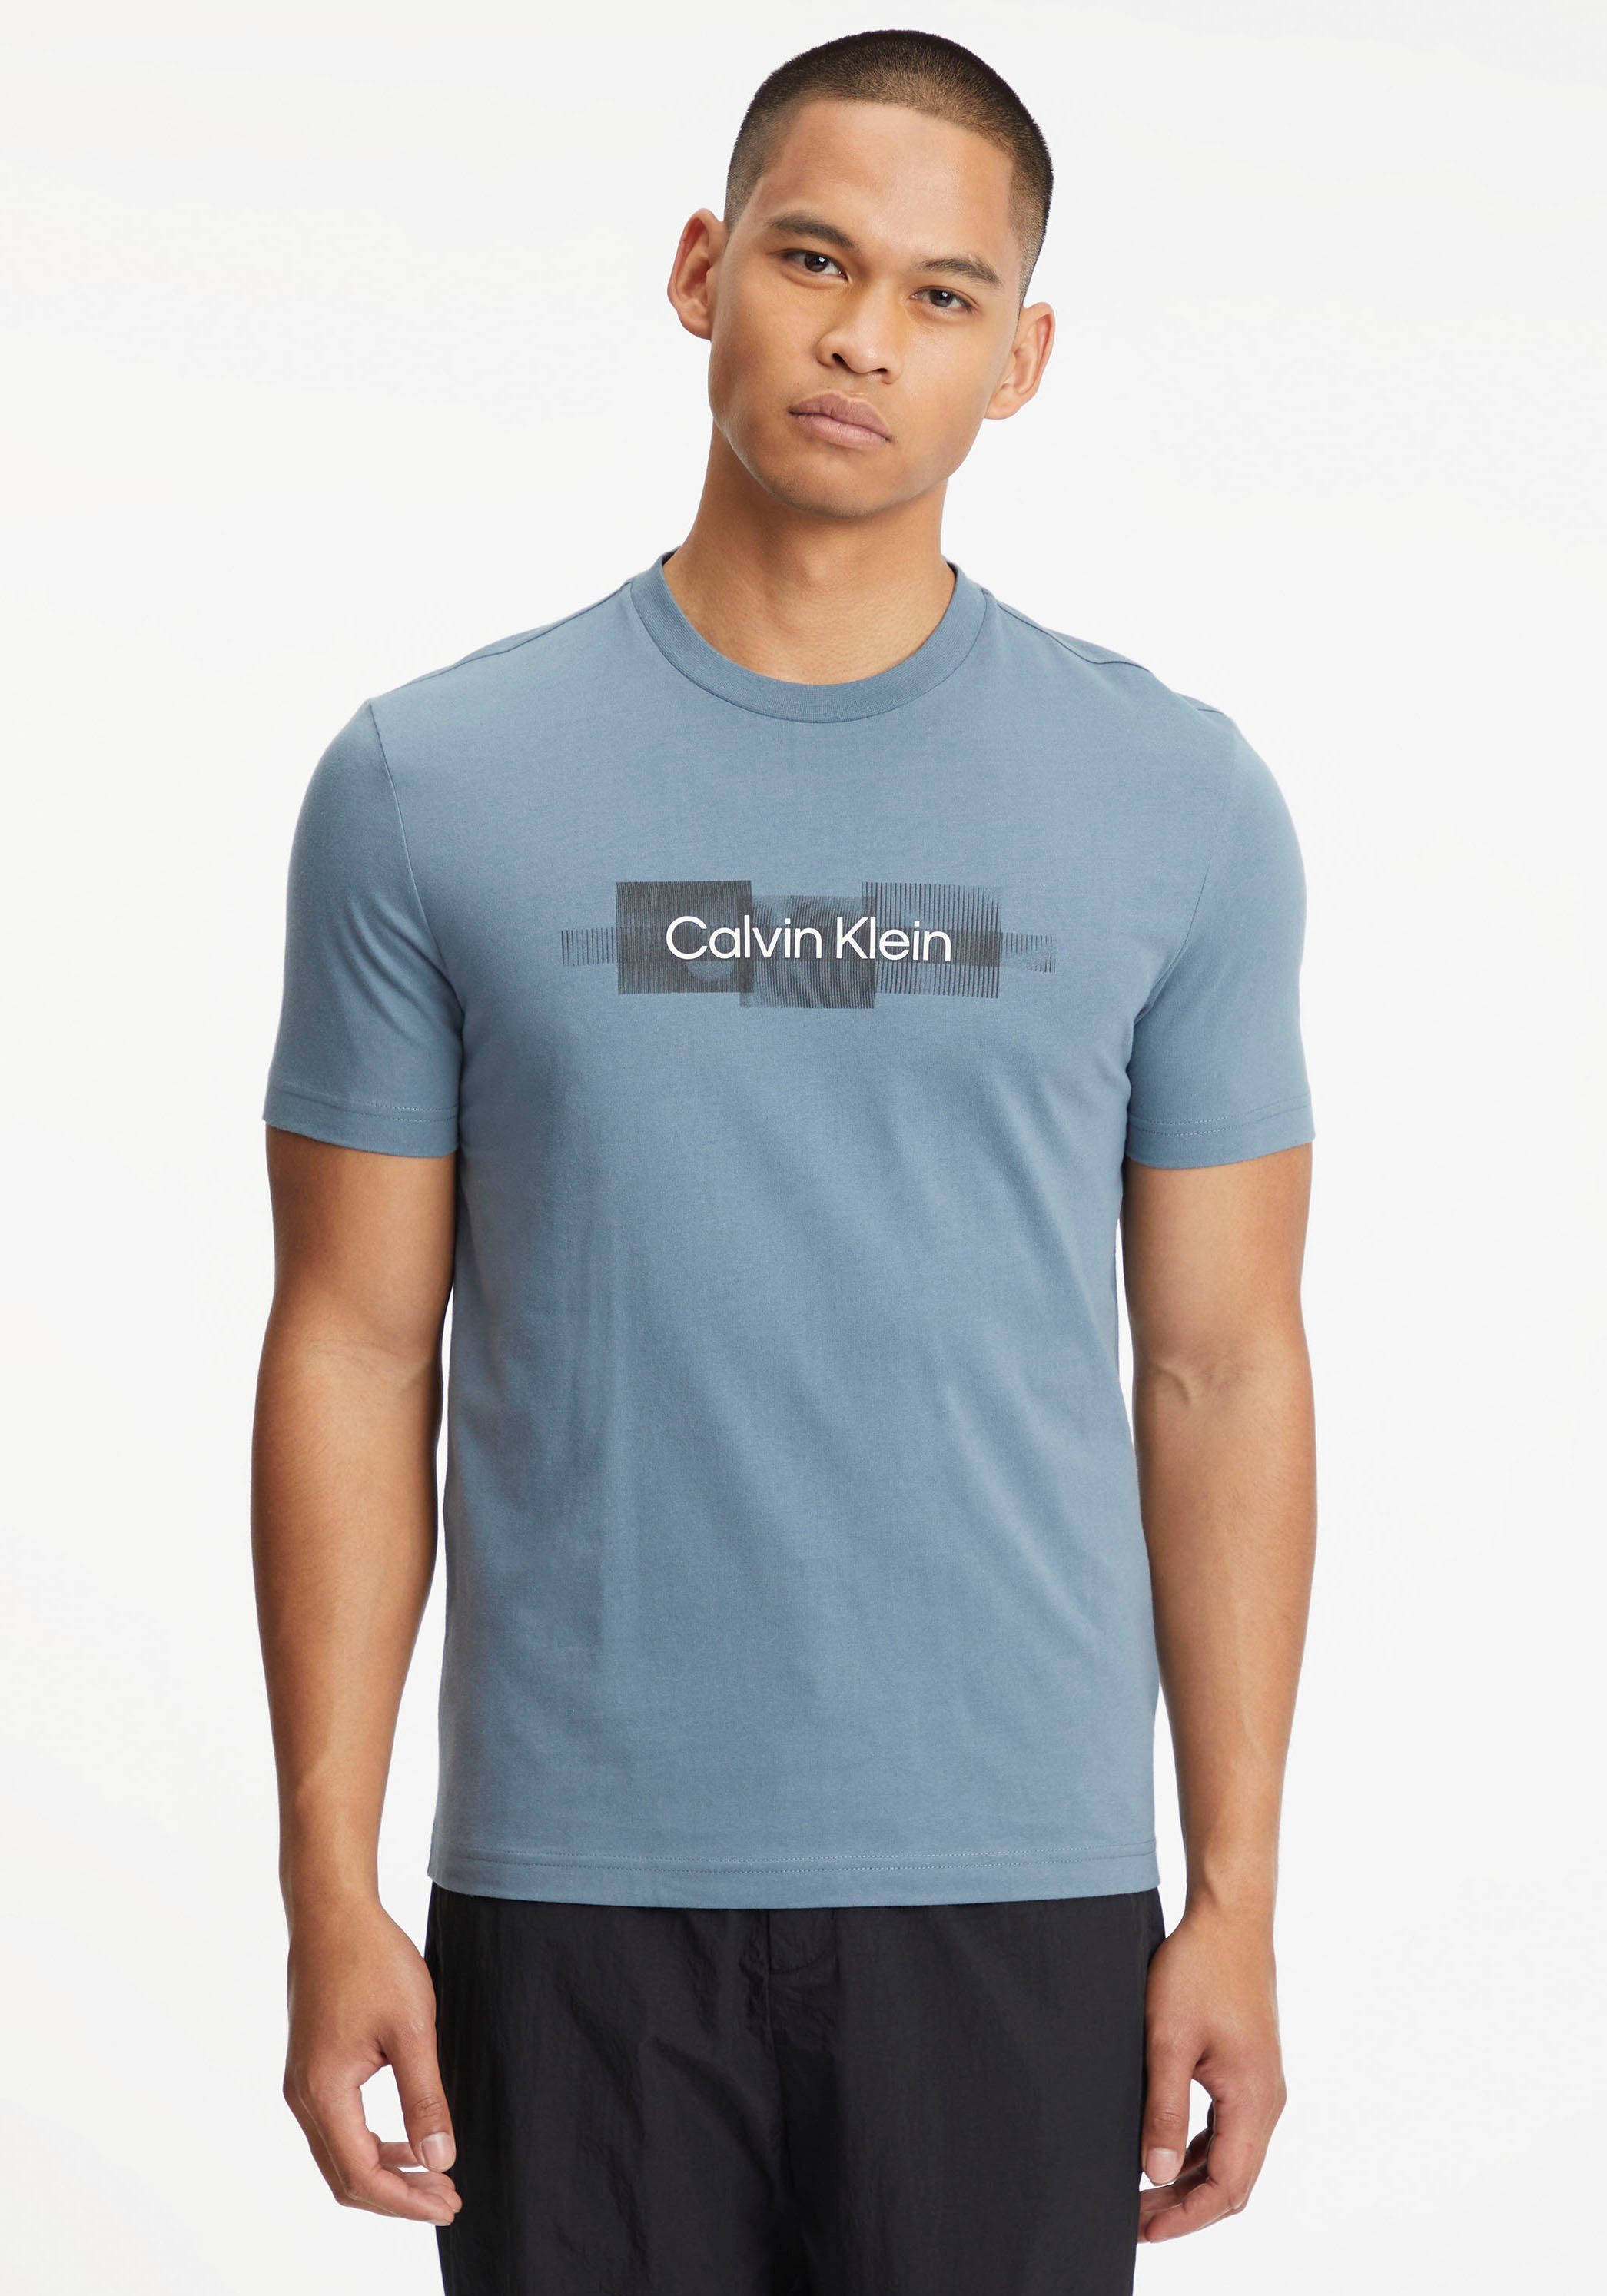 Baumwolle aus LOGO Grey T-SHIRT Calvin T-Shirt reiner Tar STRIPED Klein BOX